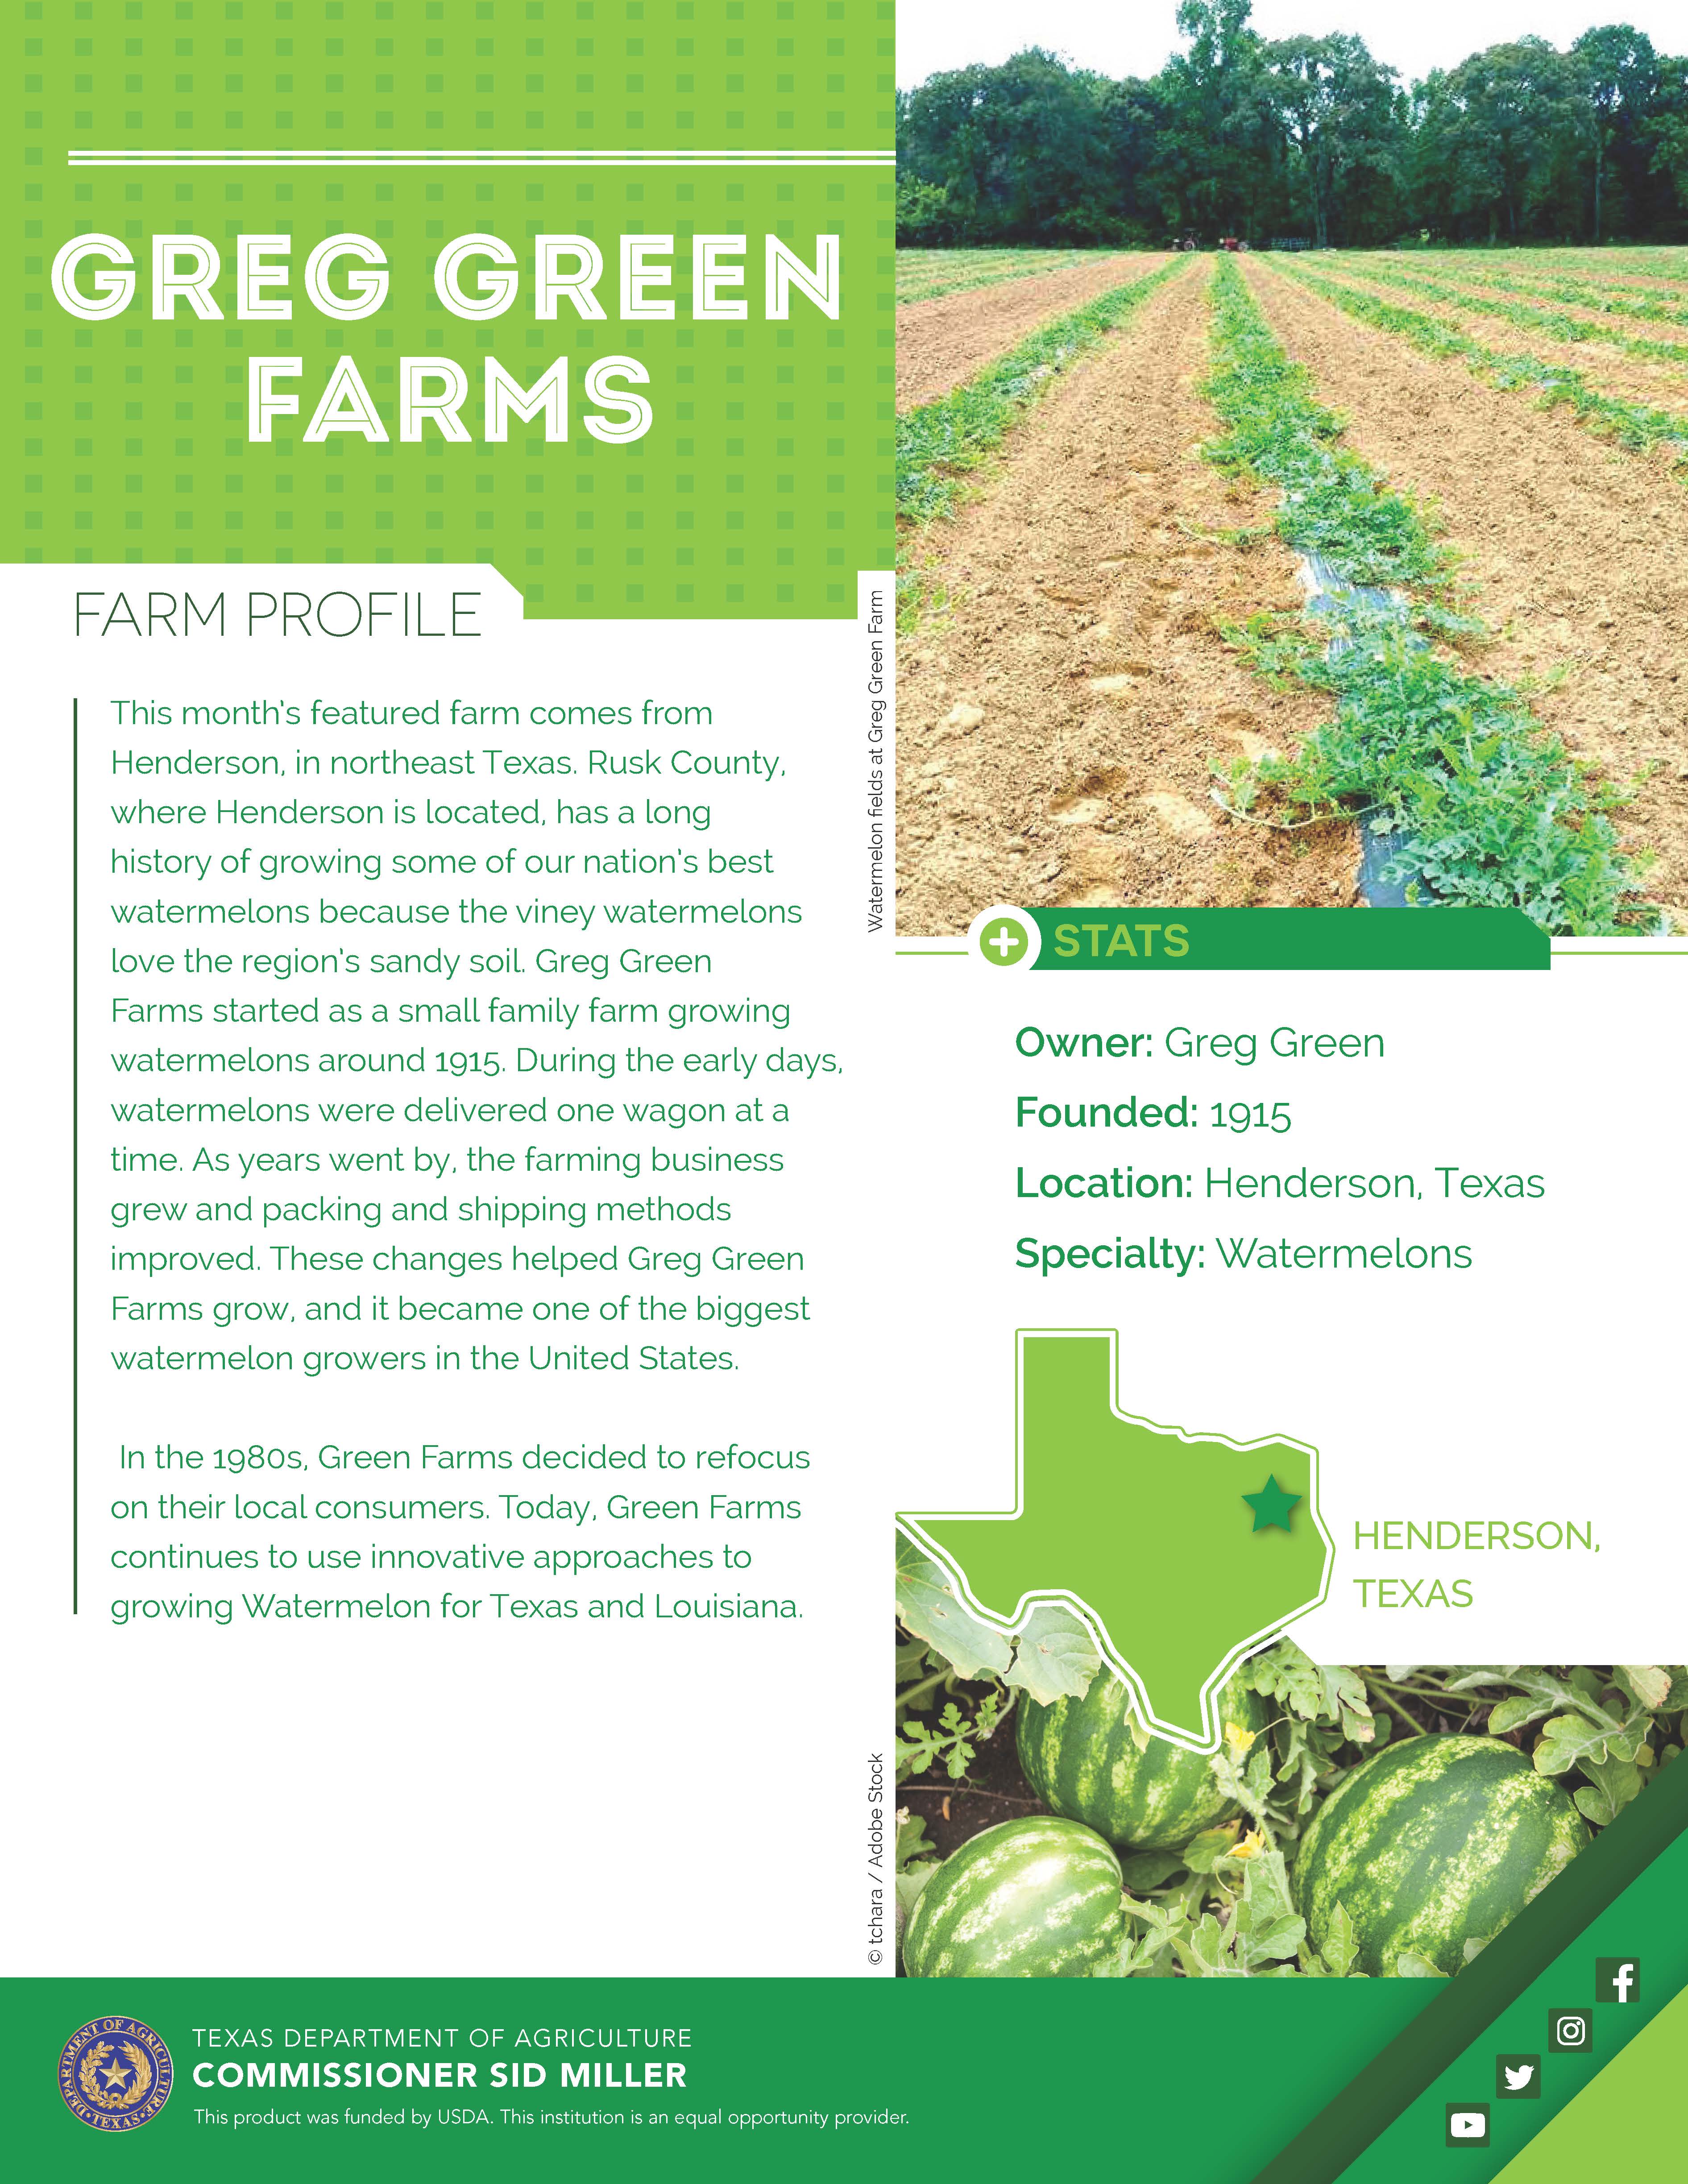 Greg Green Farms